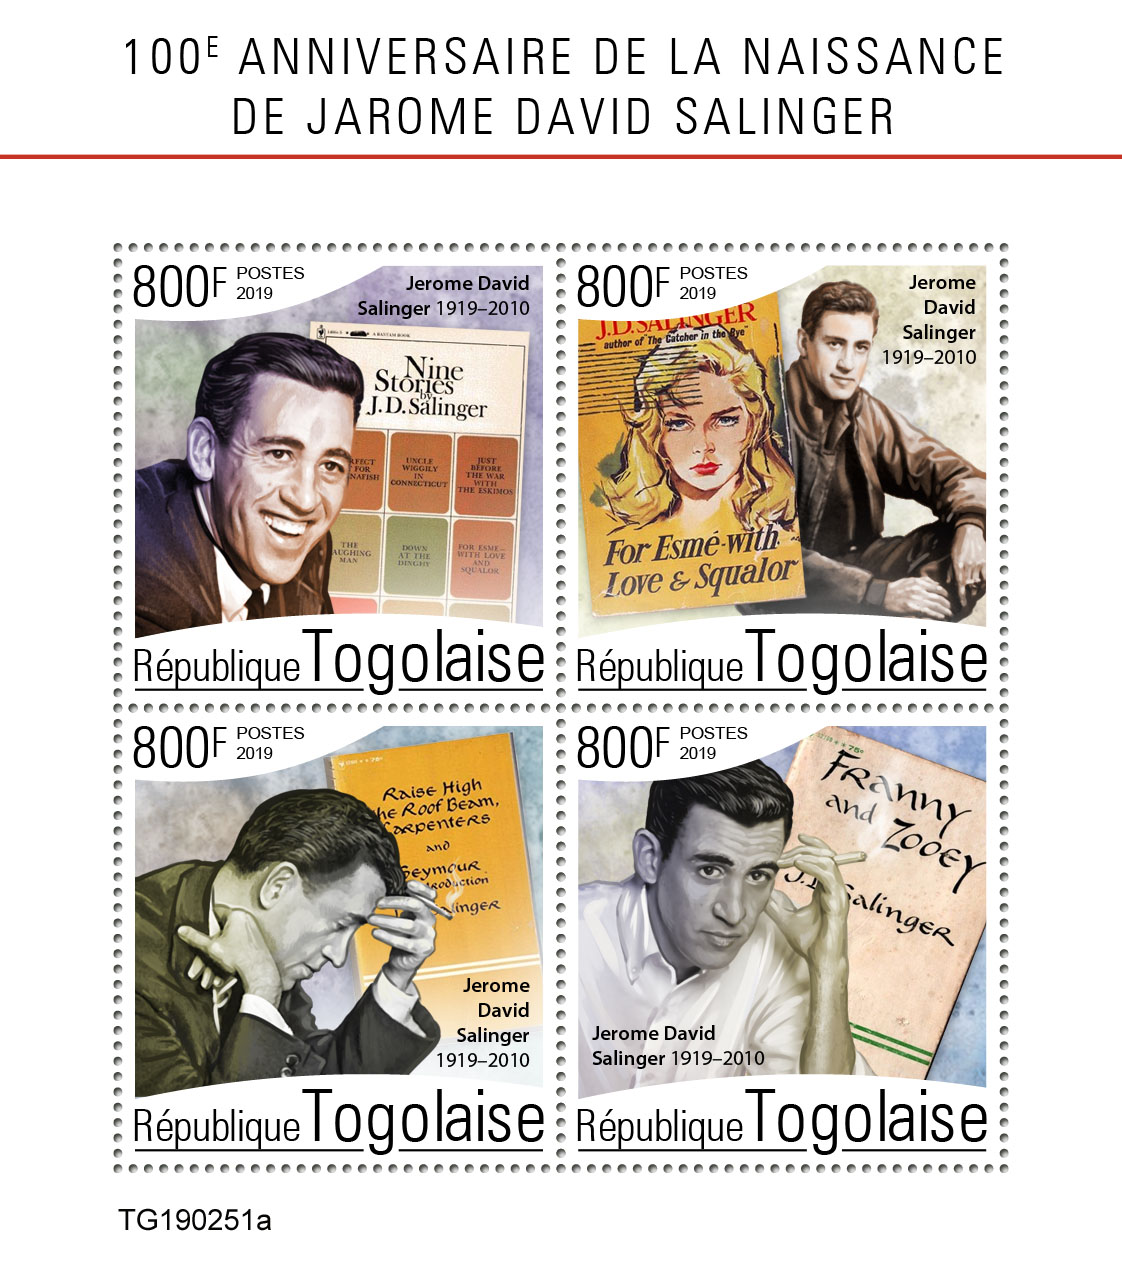 Jarome David Salinger - Issue of Togo postage stamps